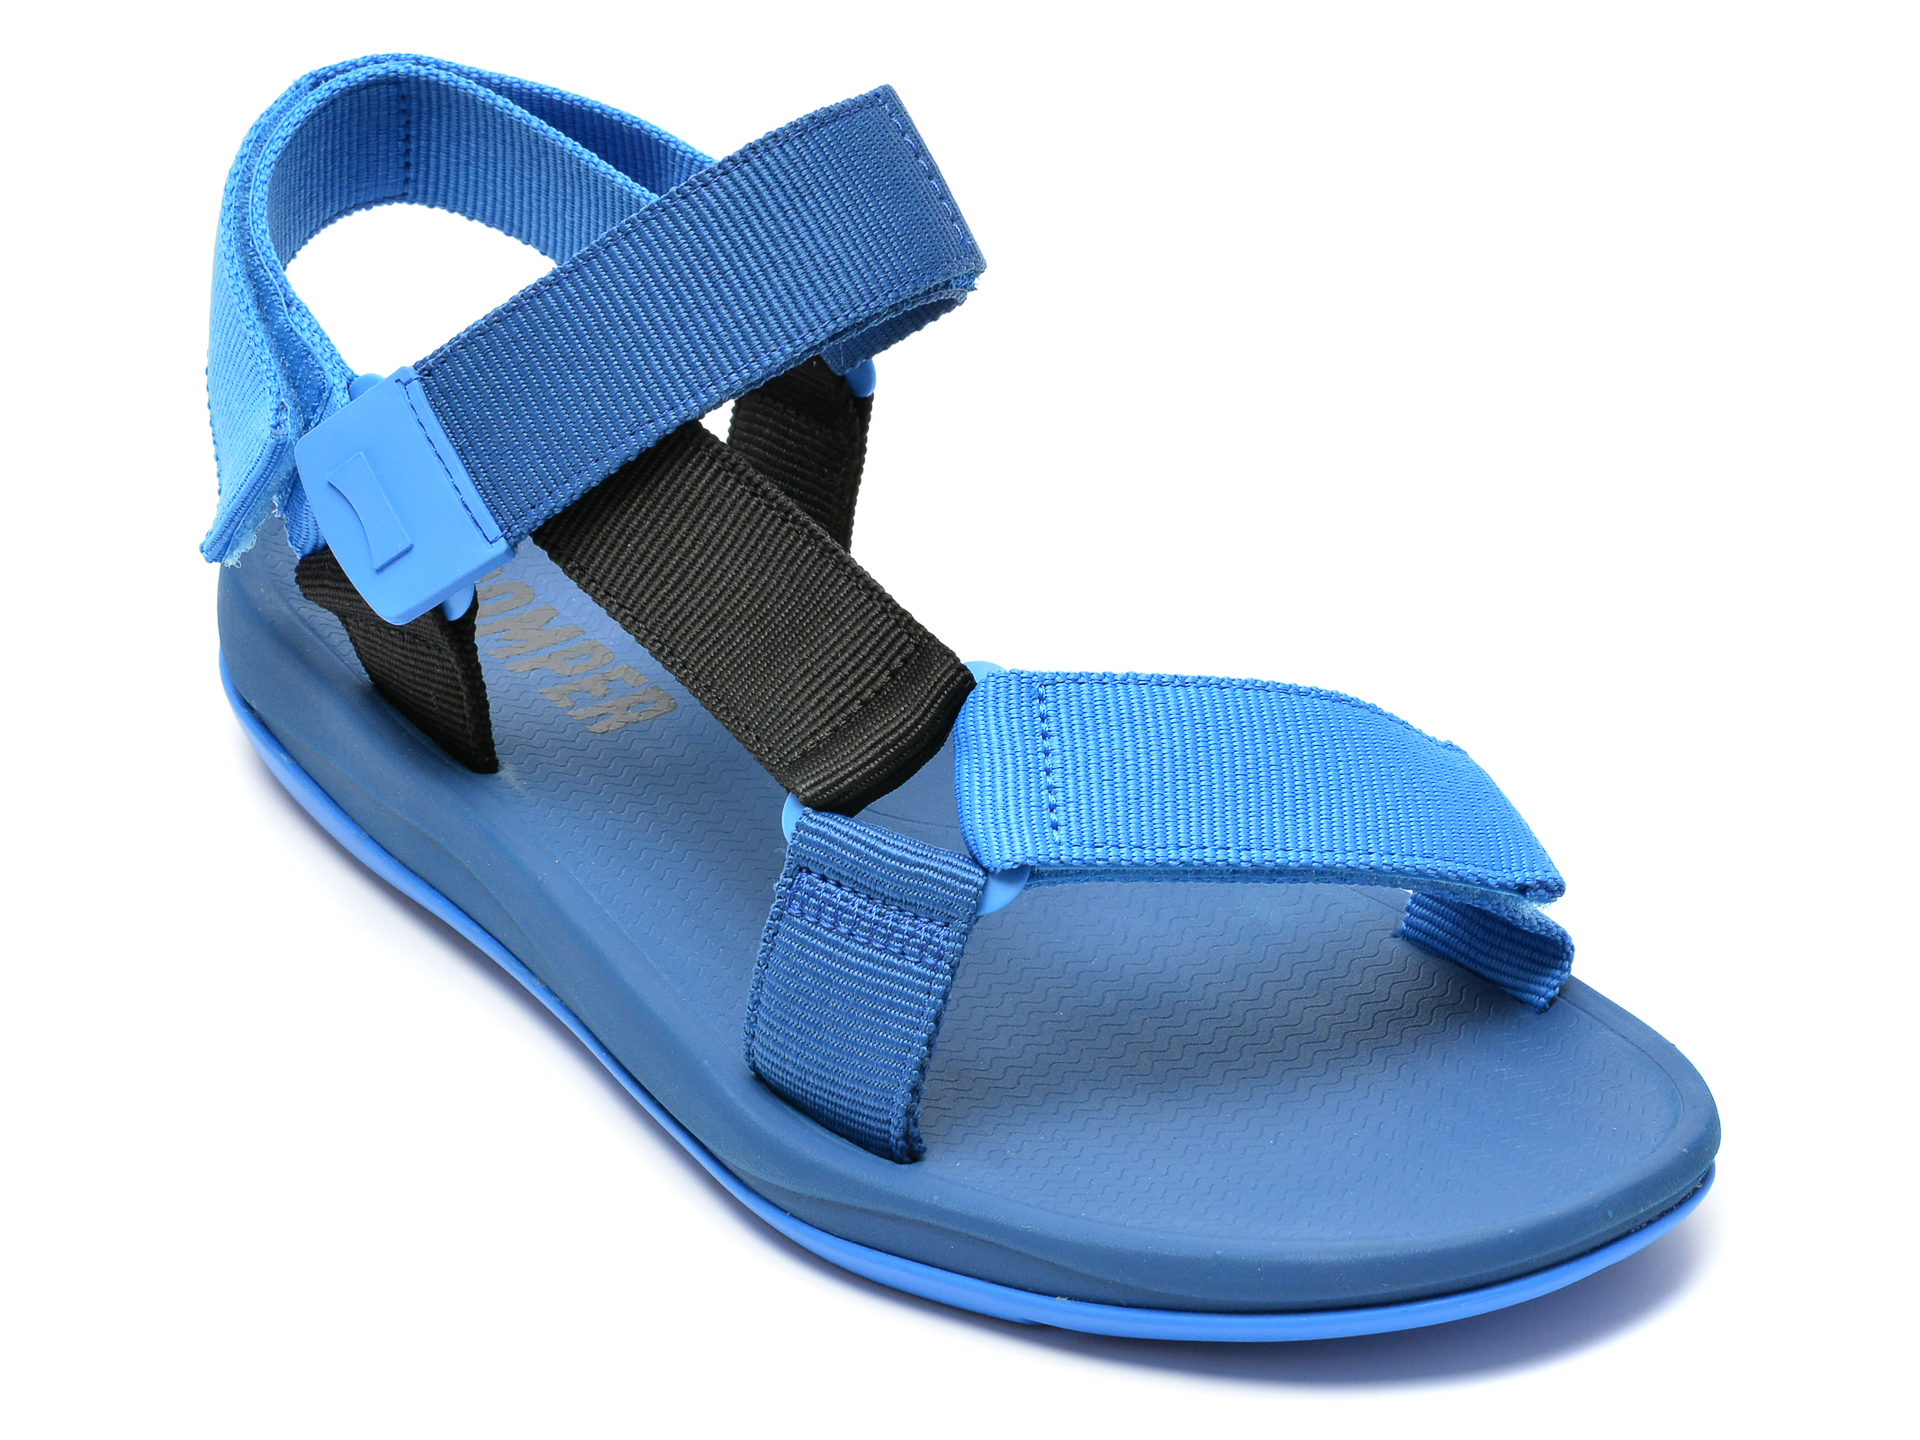 Sandale CAMPER albastre, K100539, din material textil imagine reduceri black friday 2021 Camper